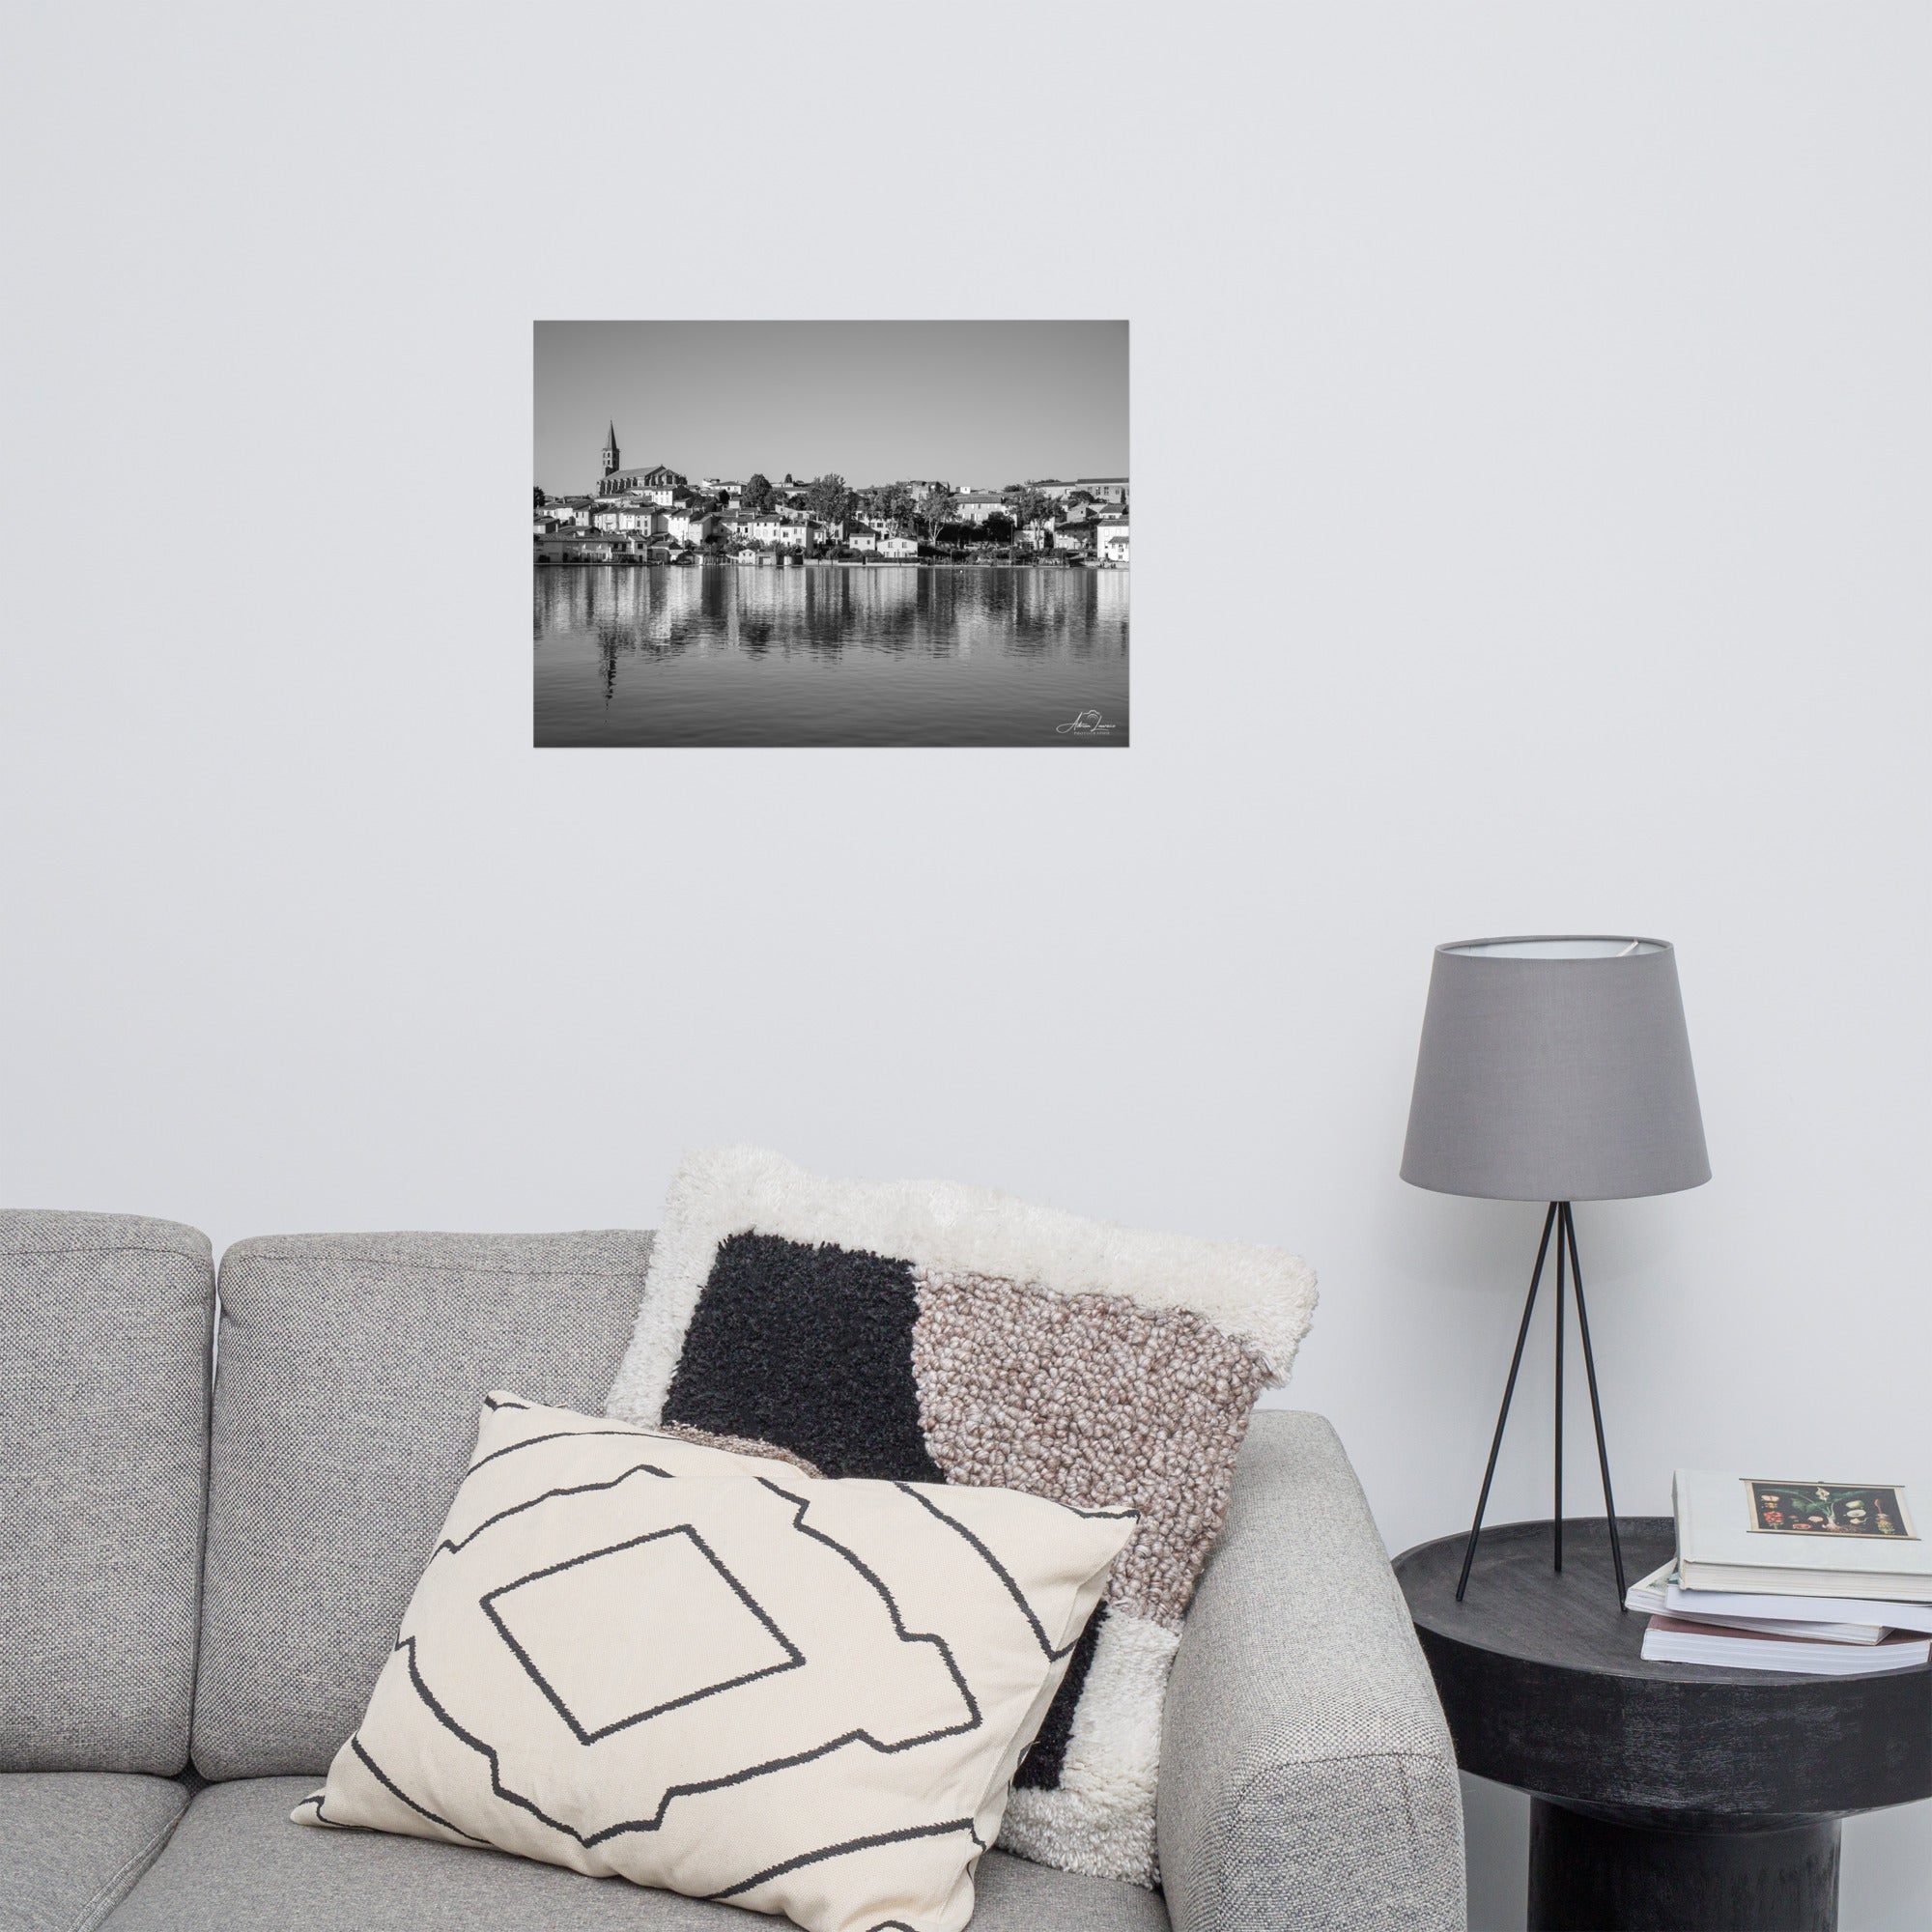 Photographie noir et blanc 'Pas de vague à Gatteville' d'Adrien Louraco, illustrant le paysage paisible du canal du midi à Castelnaudary, avec une ambiance mélancolique et intemporelle.